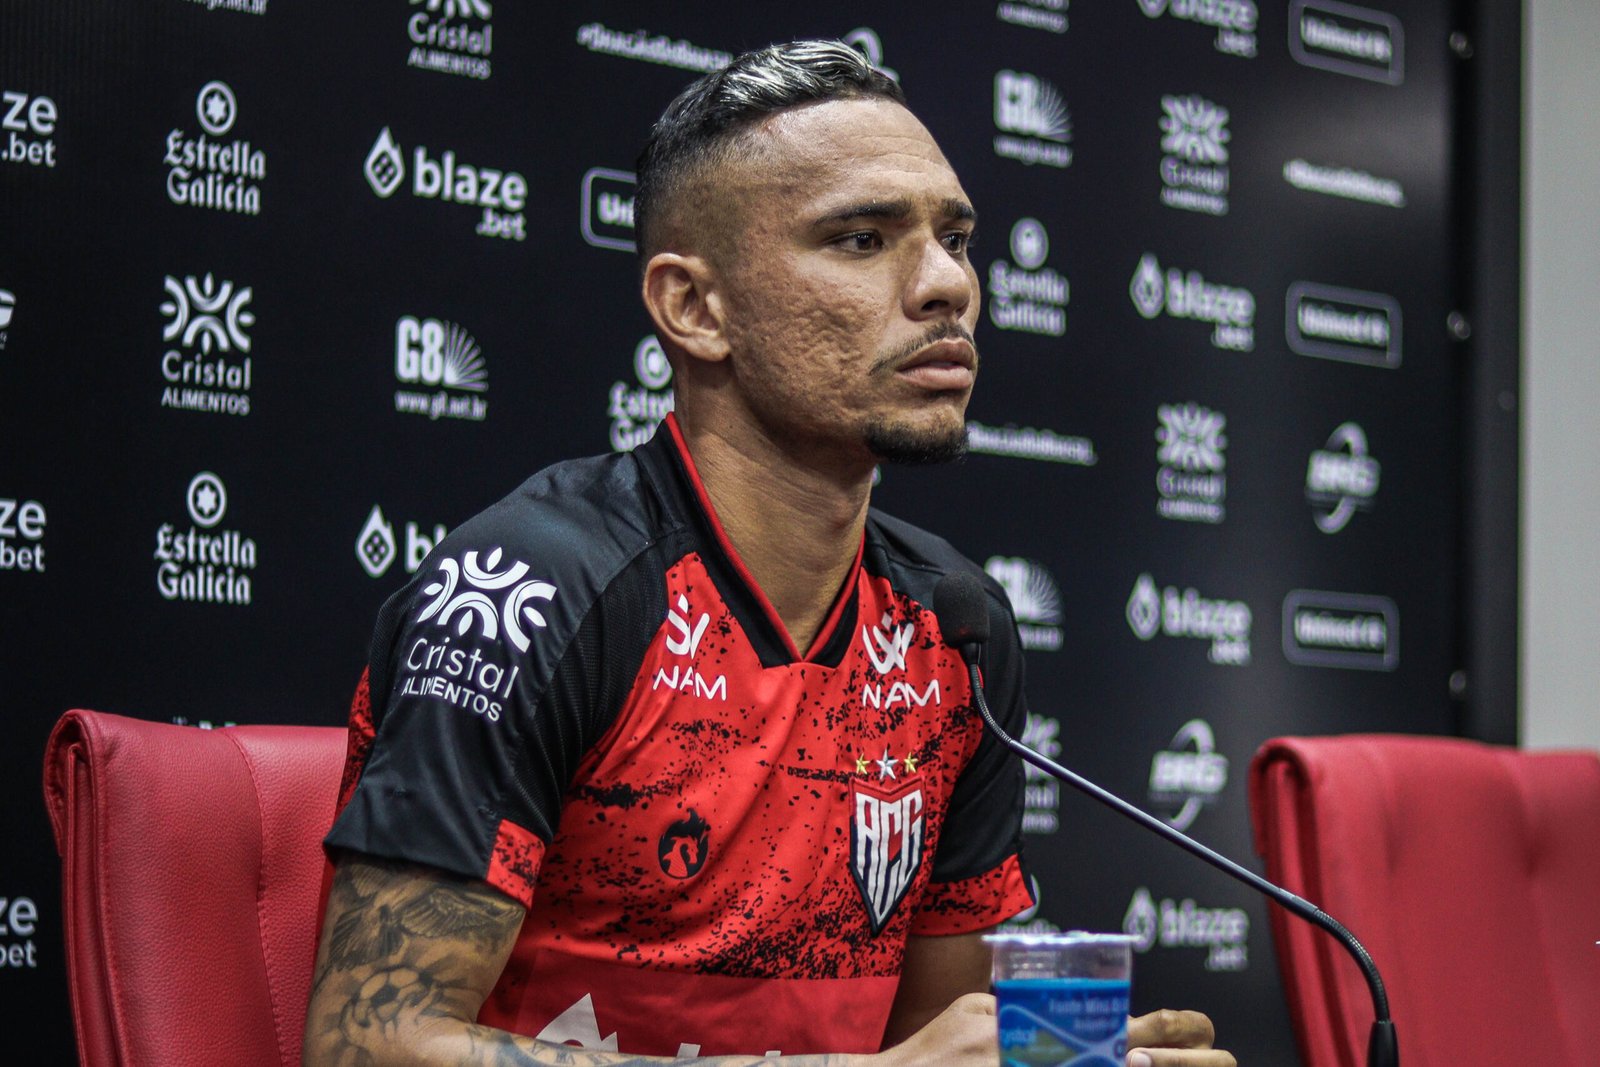 Luiz Fernando comenta sobre o próximo jogo do Atlético-GO e seus objetivos no clube "quero ser artilheiro do campeonato"